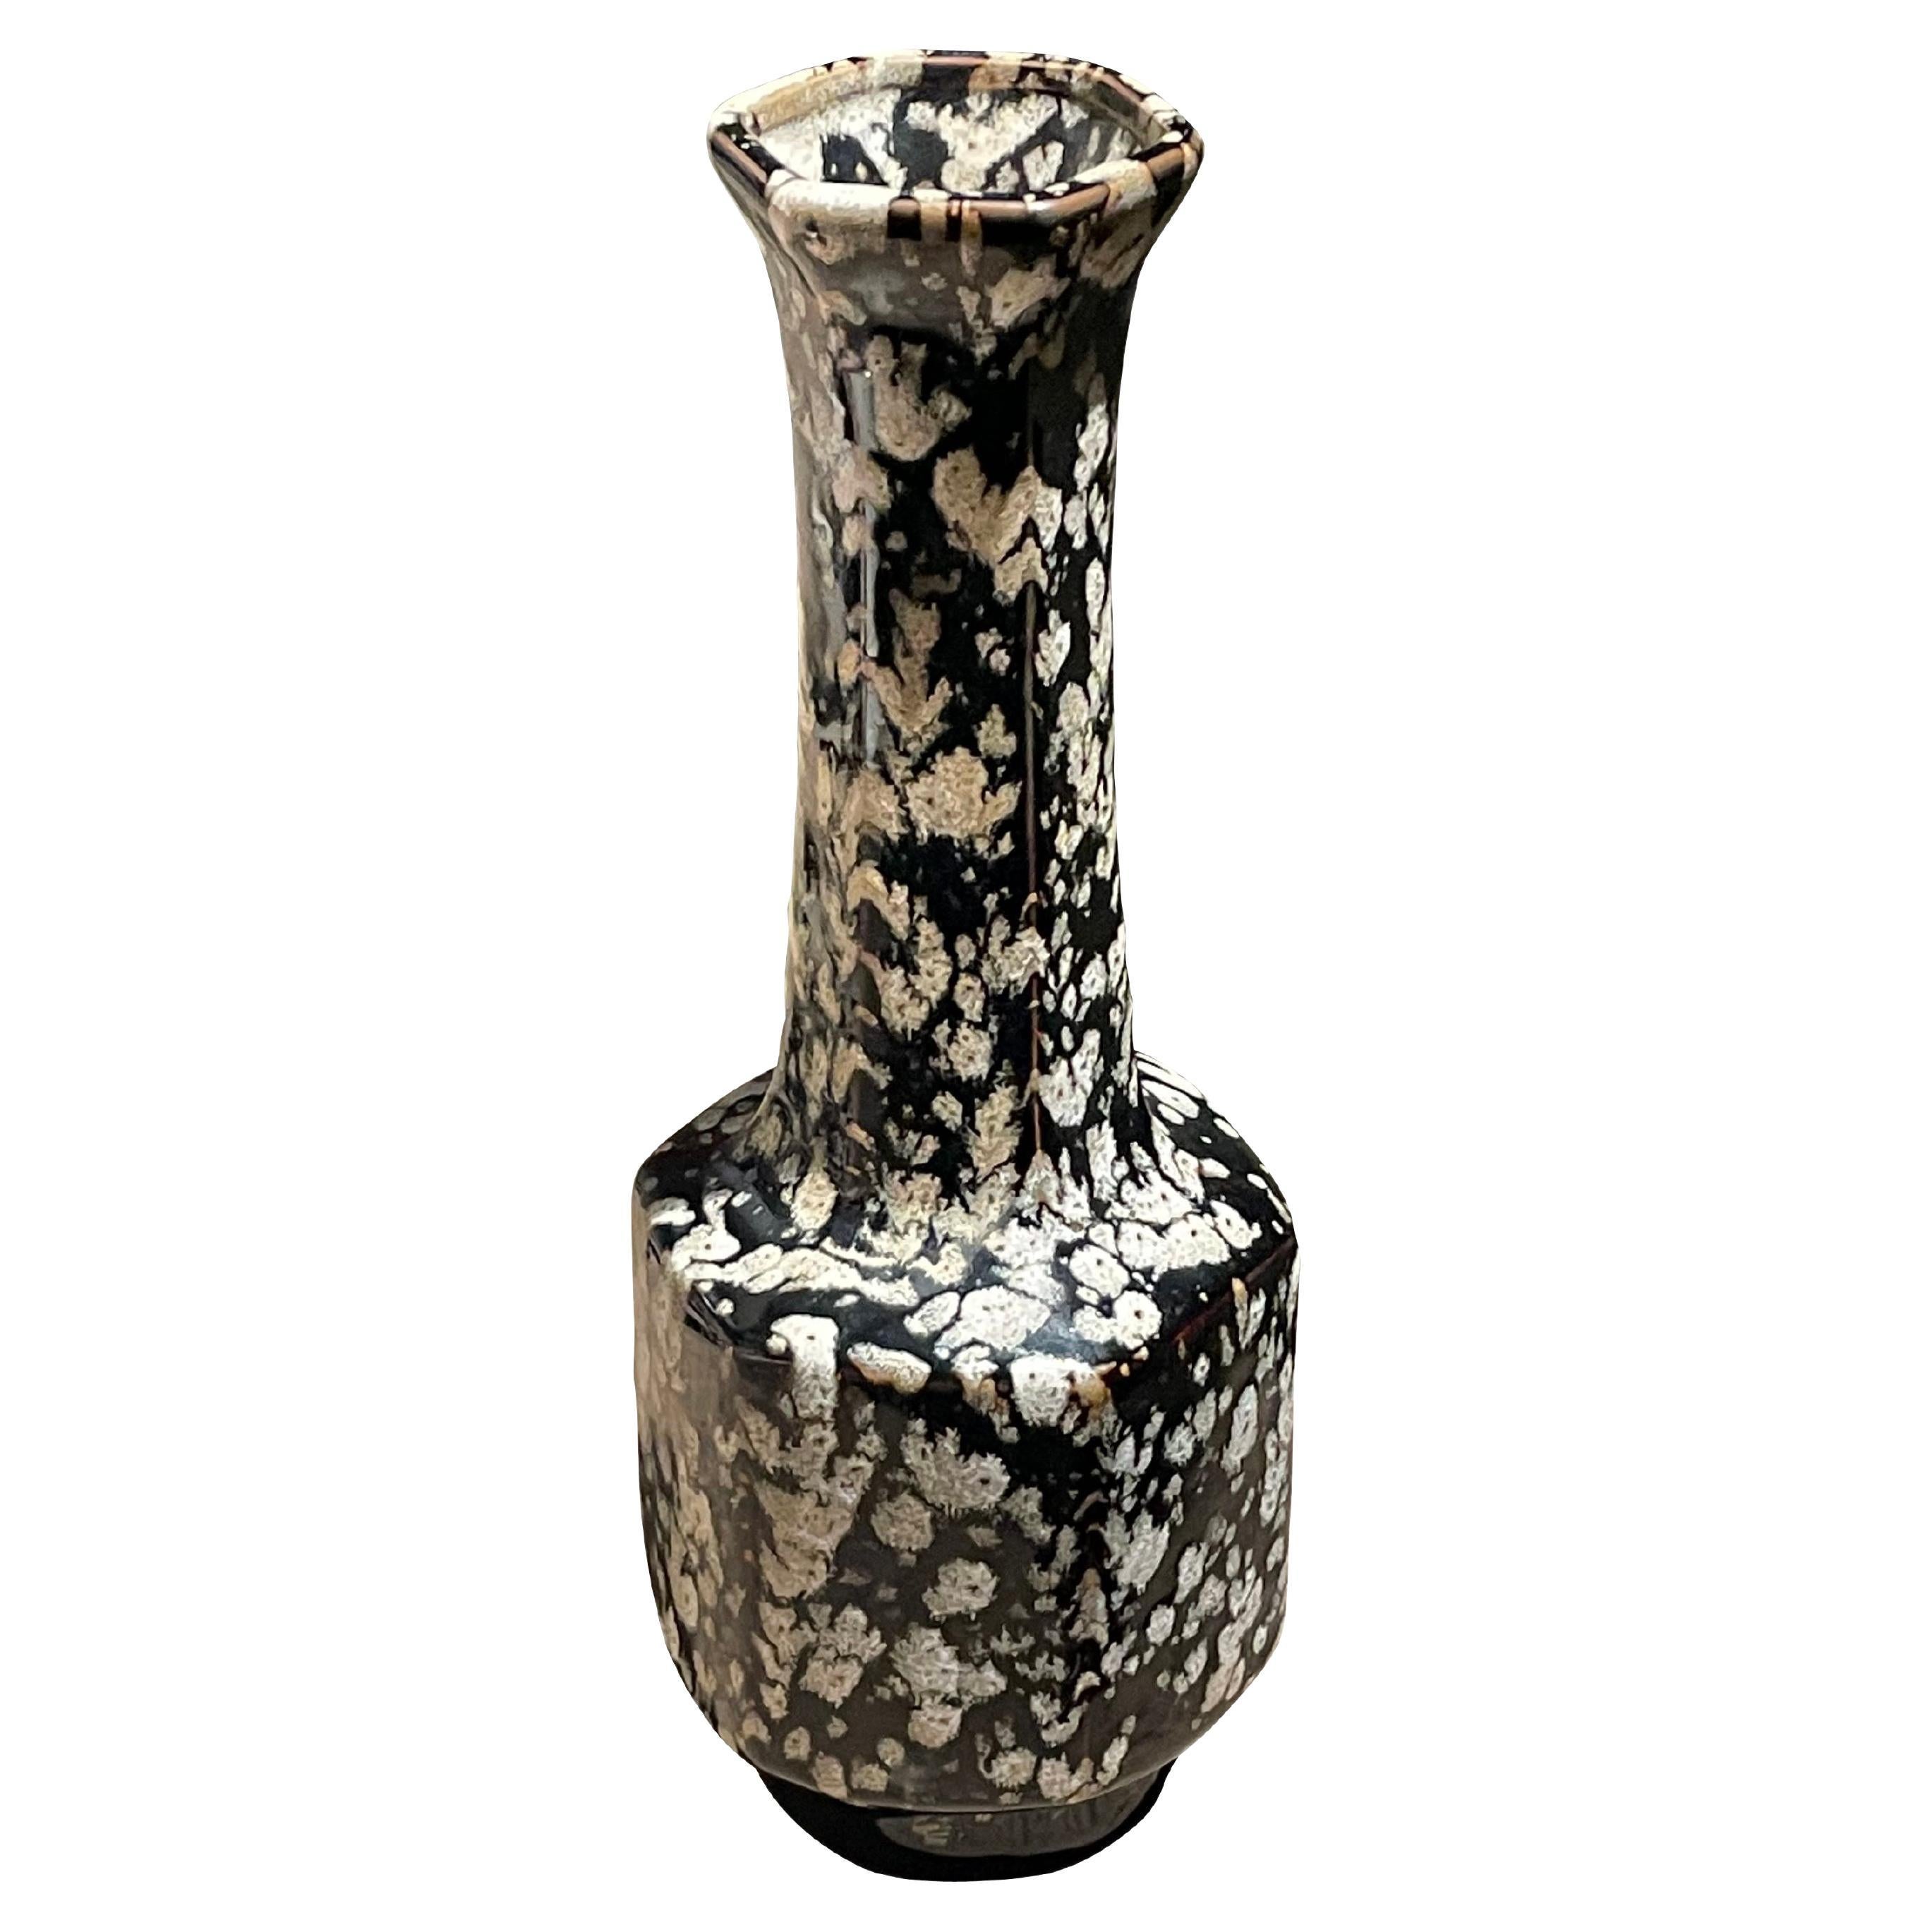 Vase mit schwarzer und weißer gesprenkelter Glasur, China, Contemporary